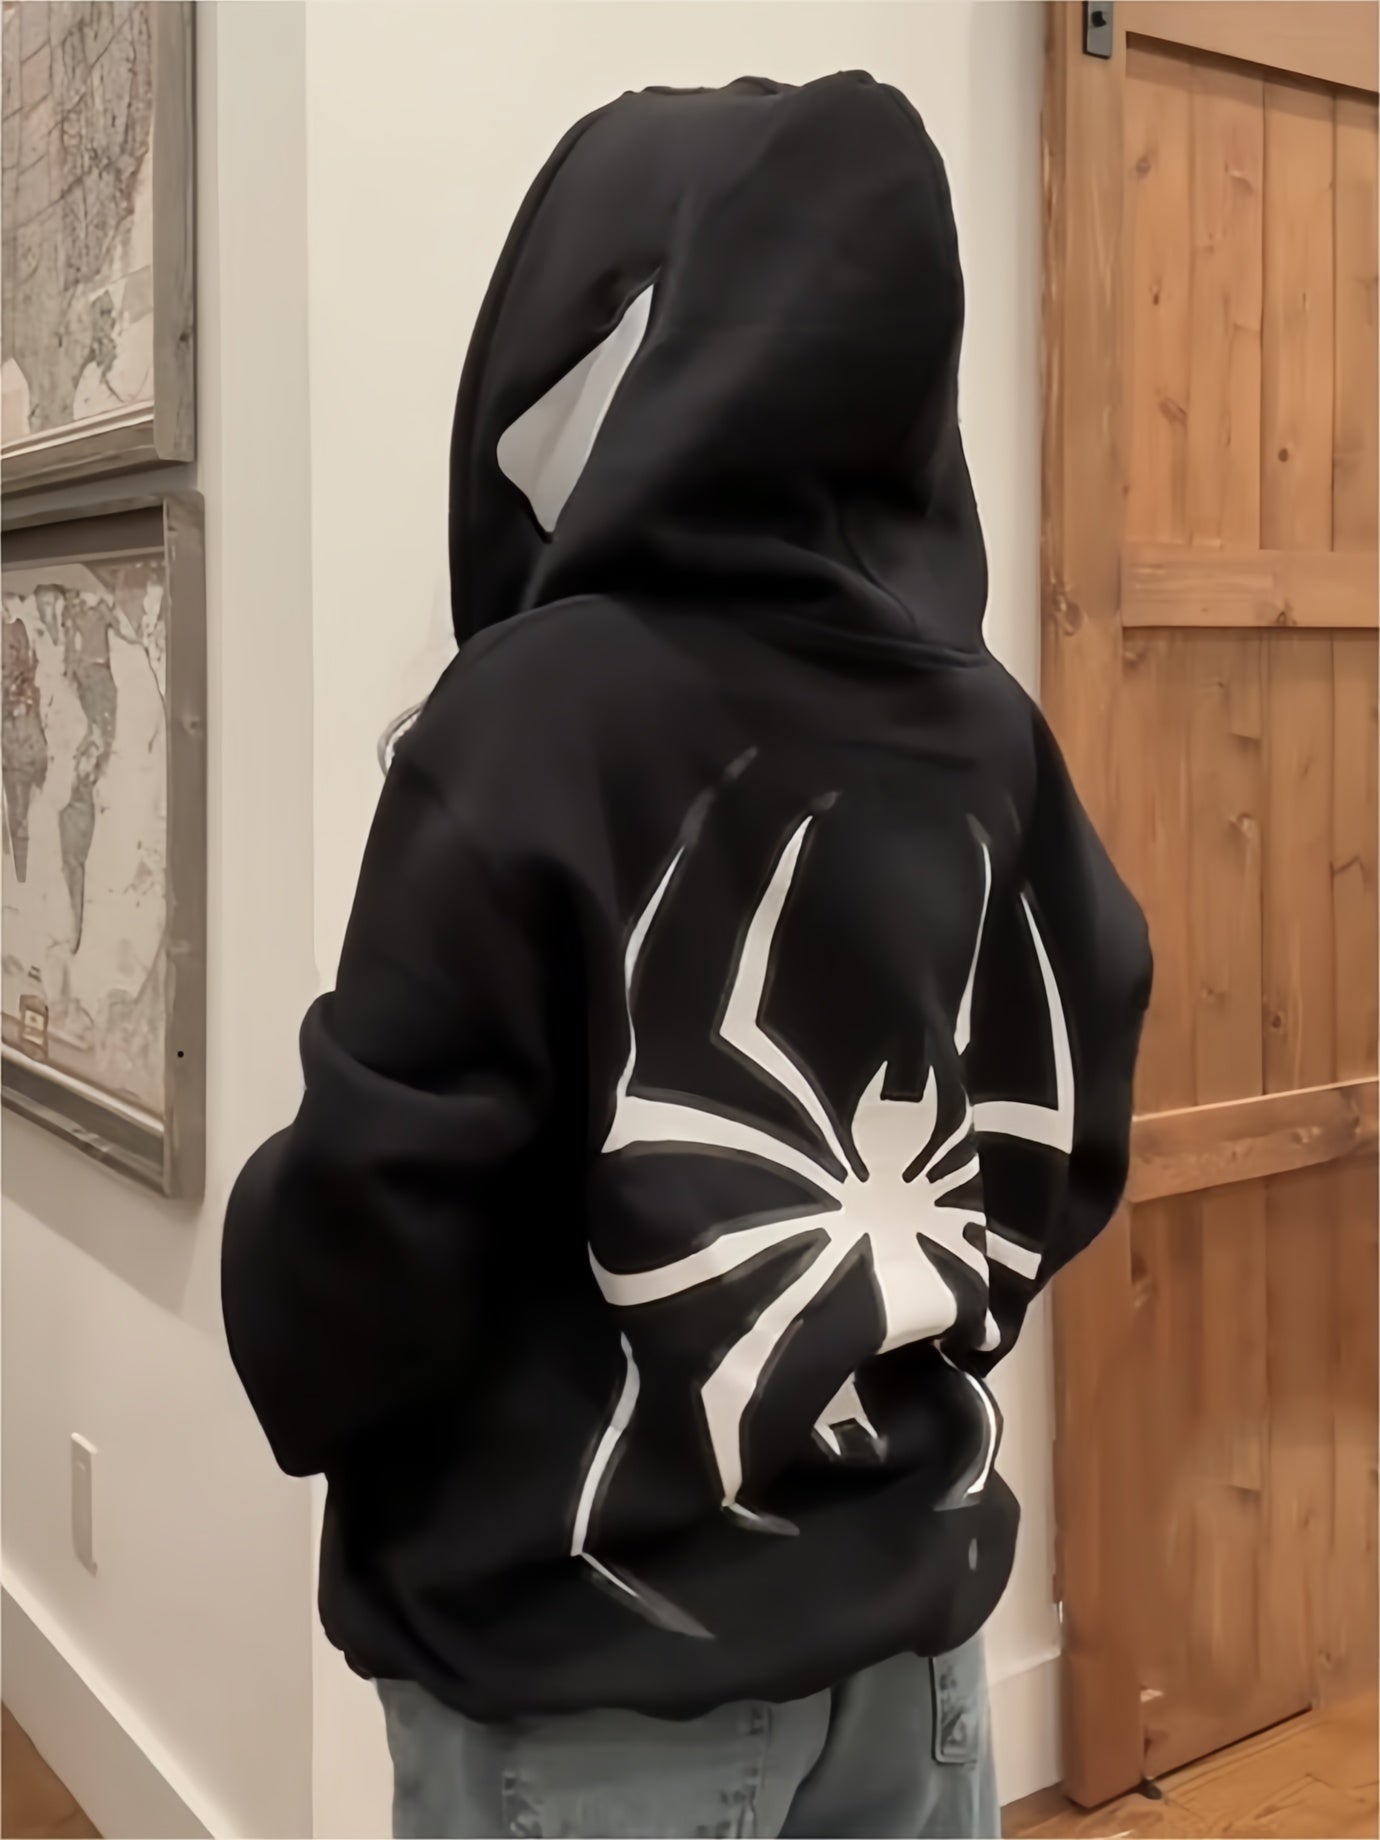 Punk zip-up hoodie with spider pattern